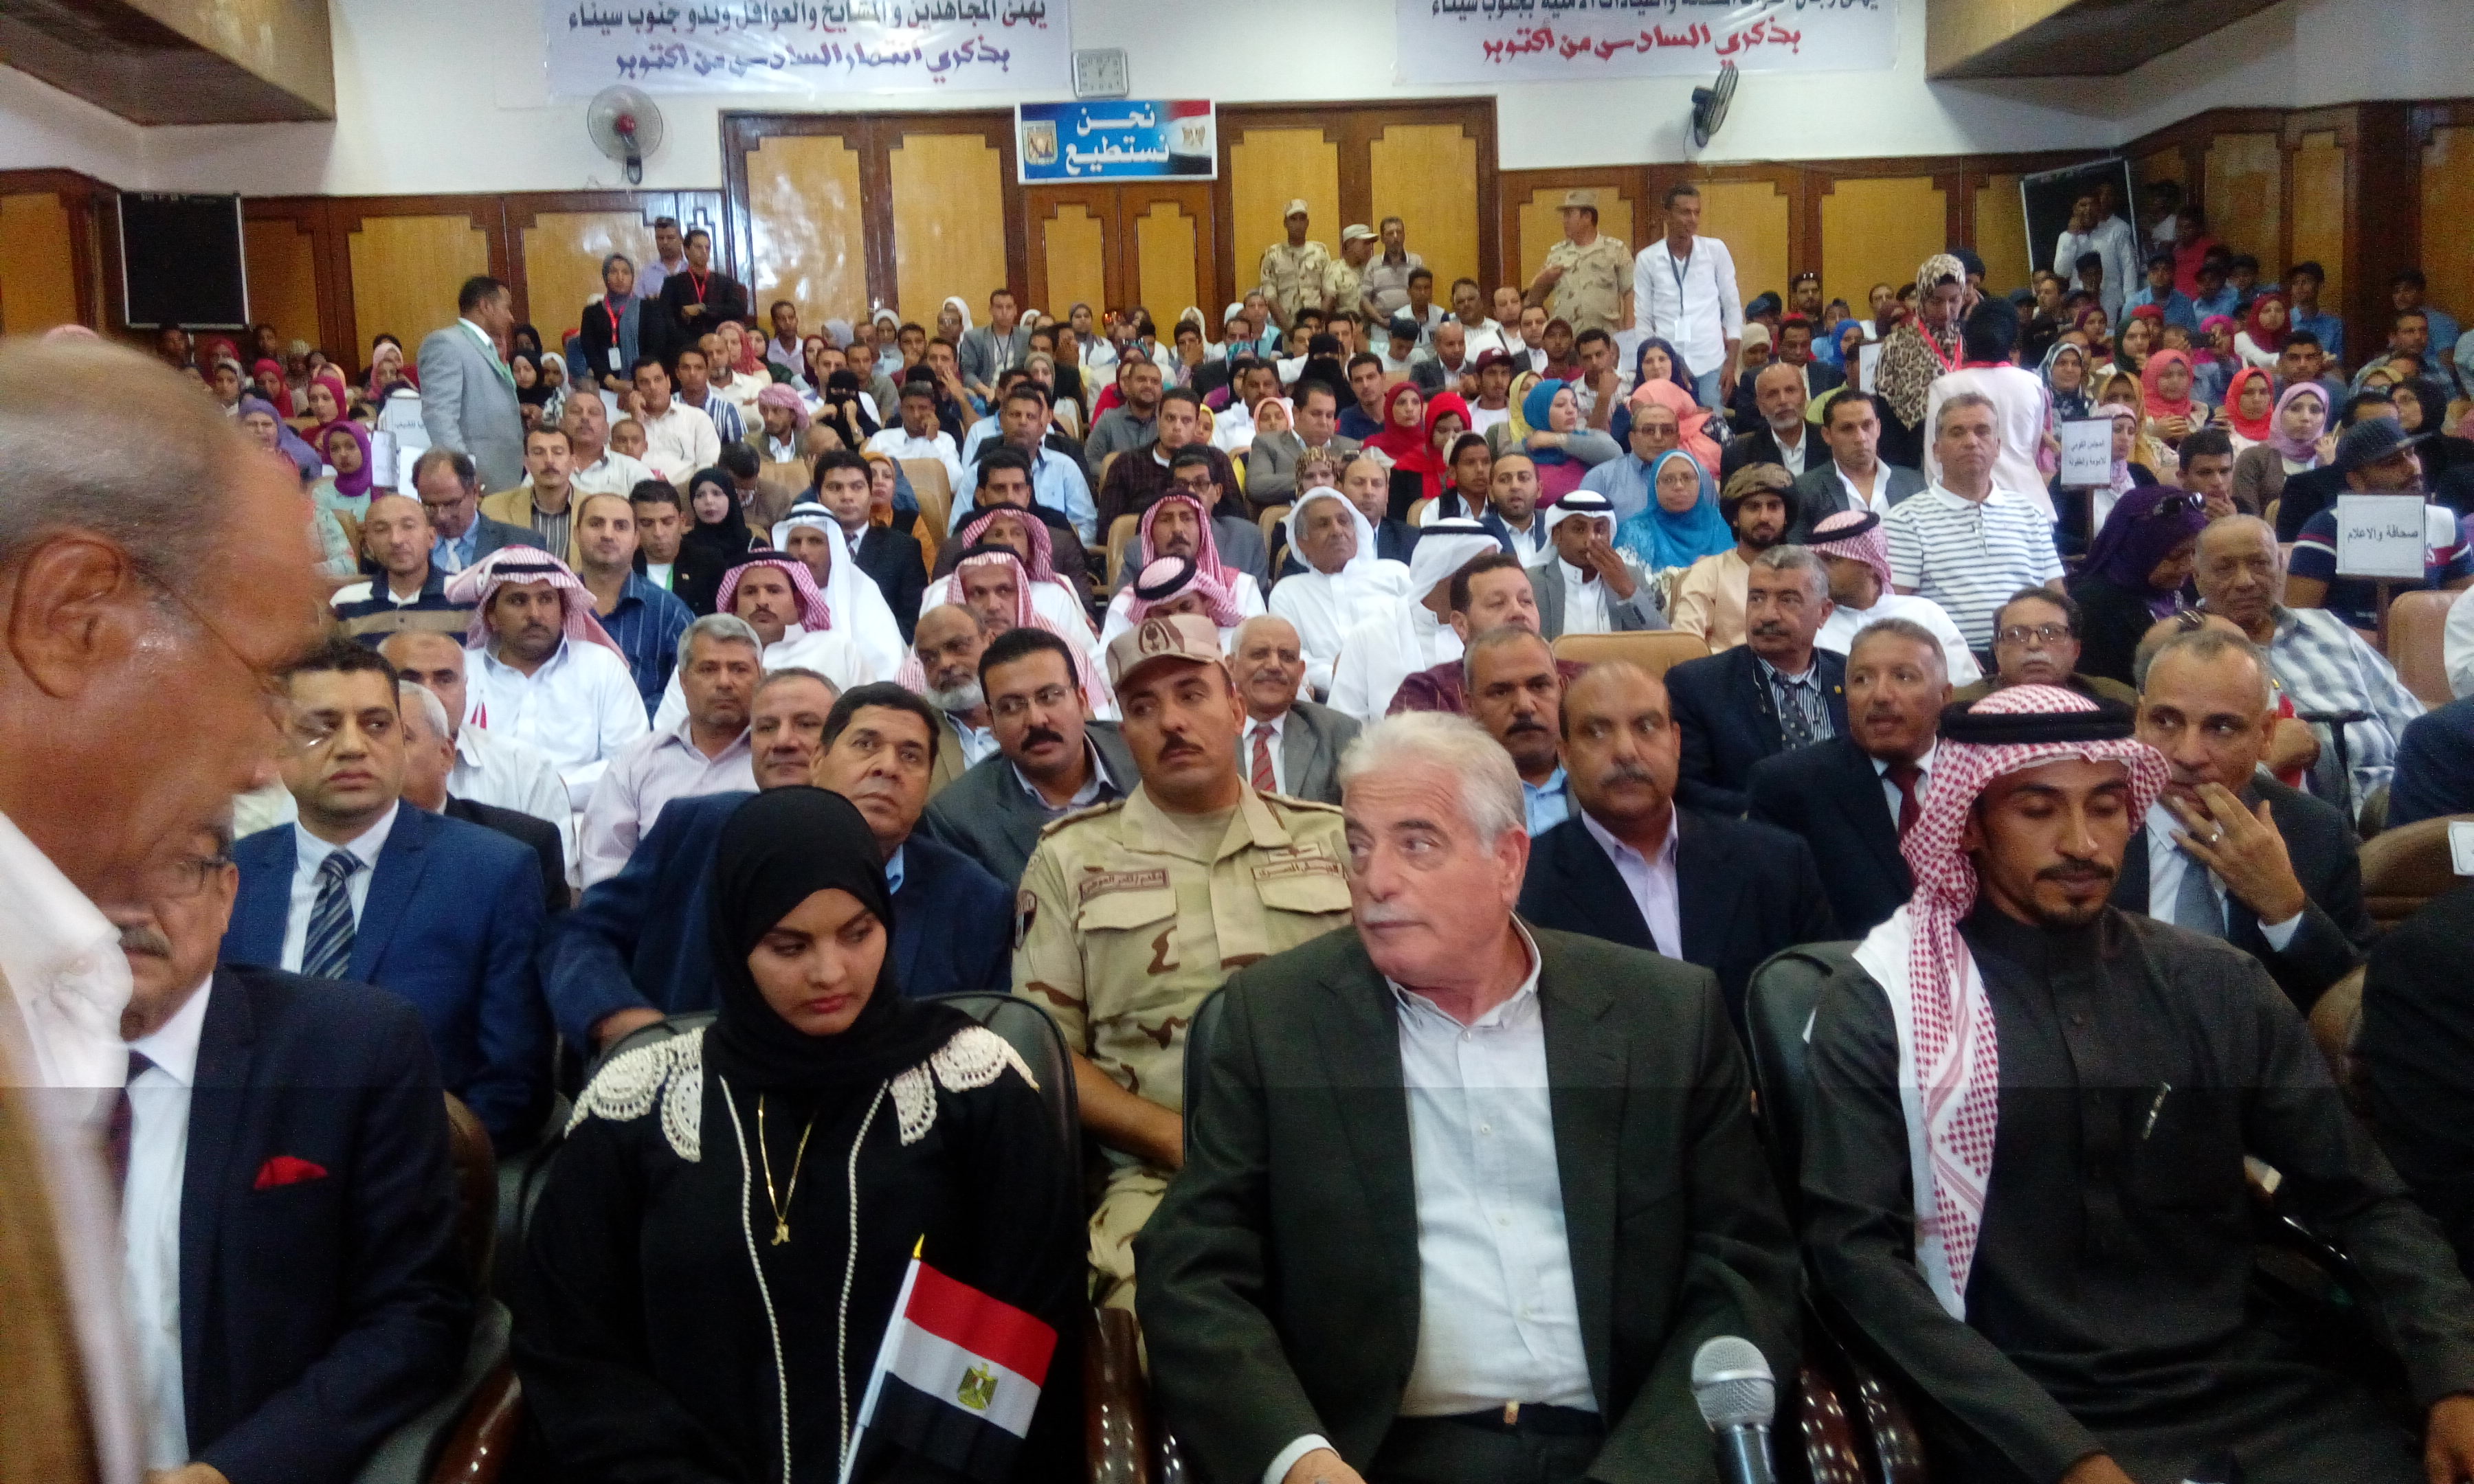 اللواء خالد فوده محافظ جنوب سيناء والقيادات التنفيذية والشعبية